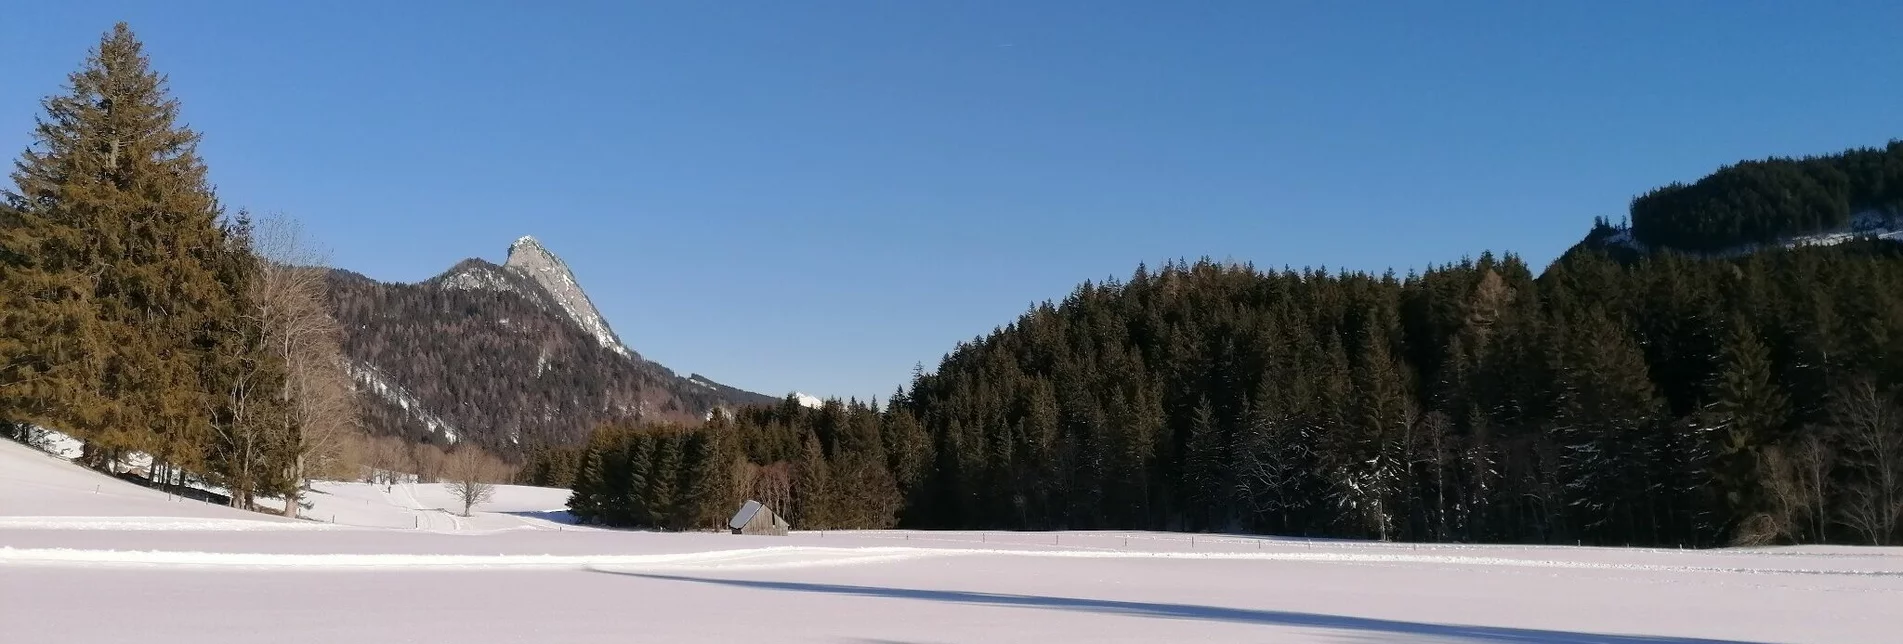 Cross-Country Skiing Spechtensee XC Trail - Touren-Impression #1 | © Erlebnisregion Schladming-Dachstein